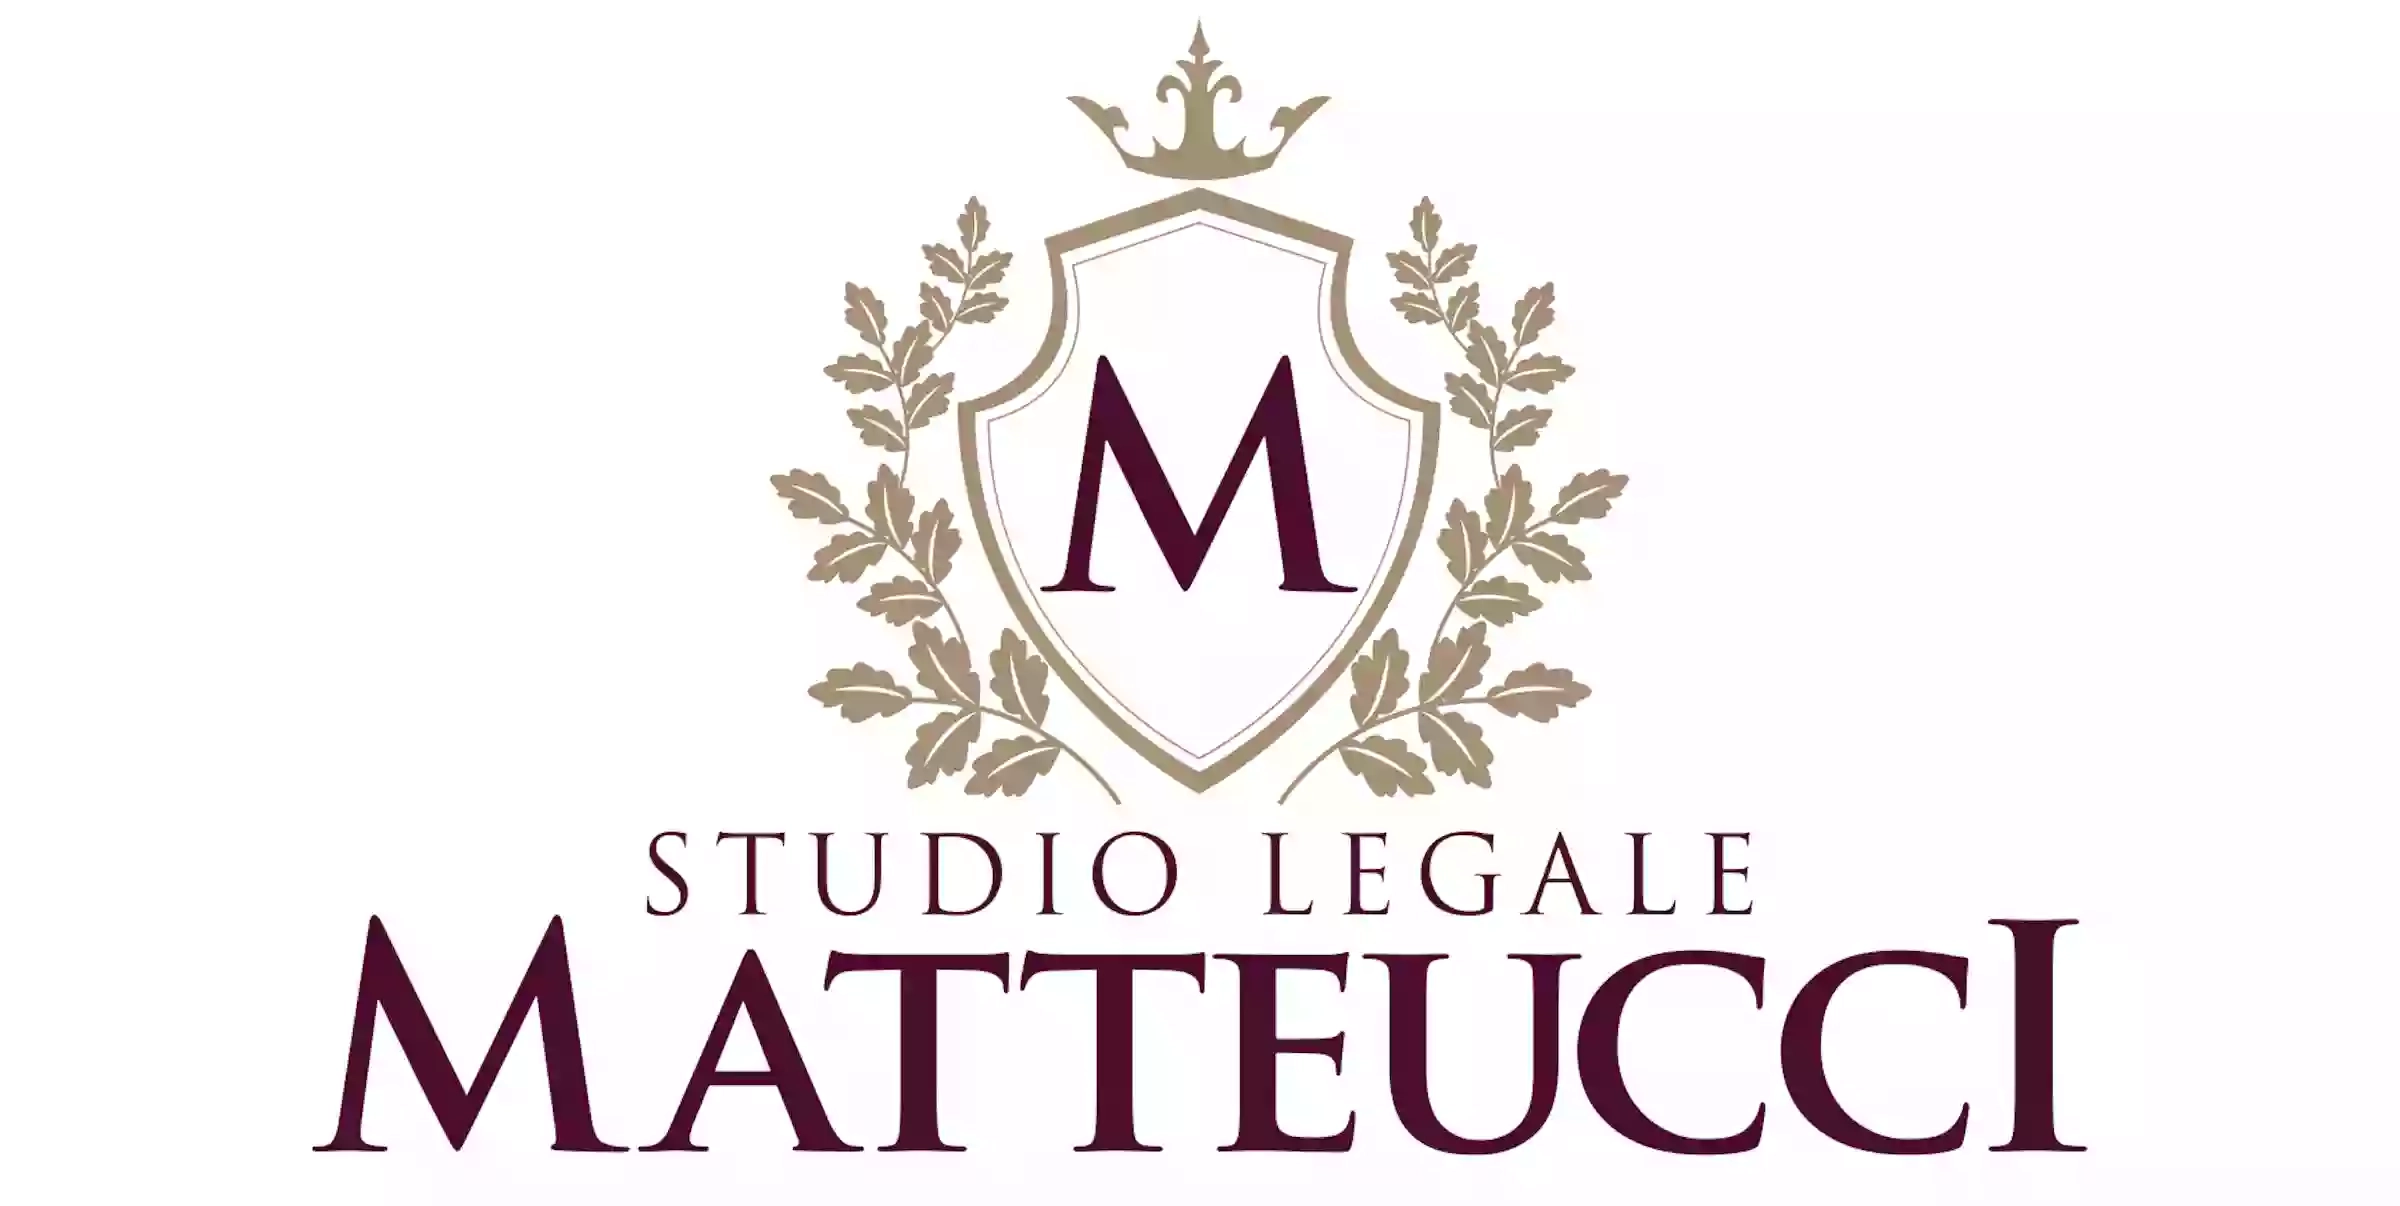 Studio Legale Matteucci - Avvocato Clarissa Matteucci